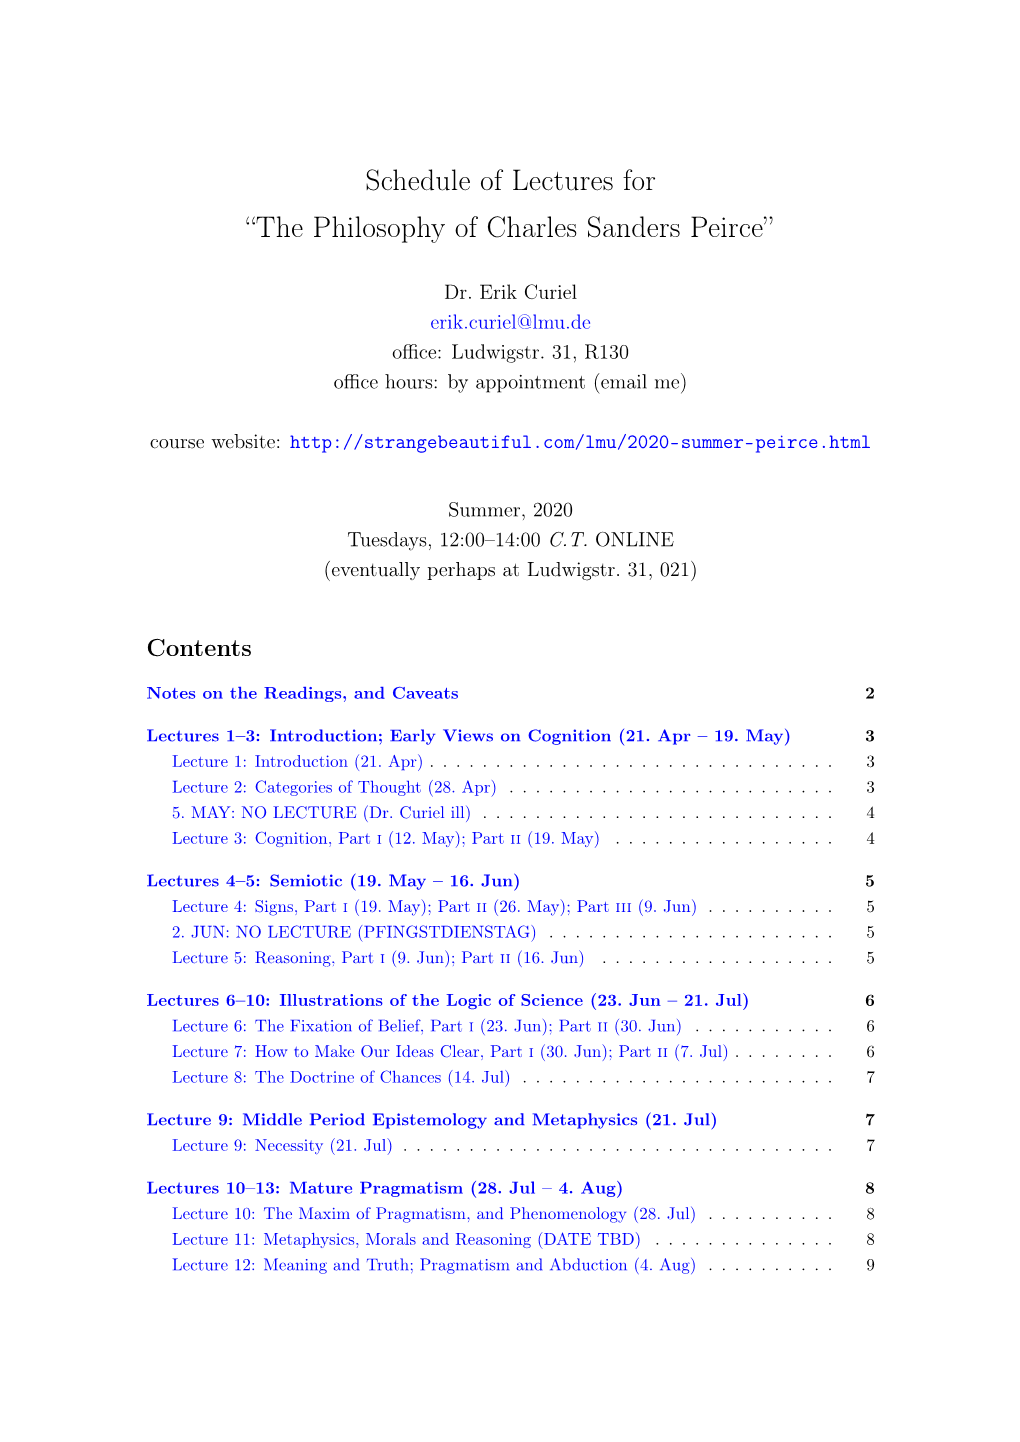 The Philosophy of Charles Sanders Peirce”